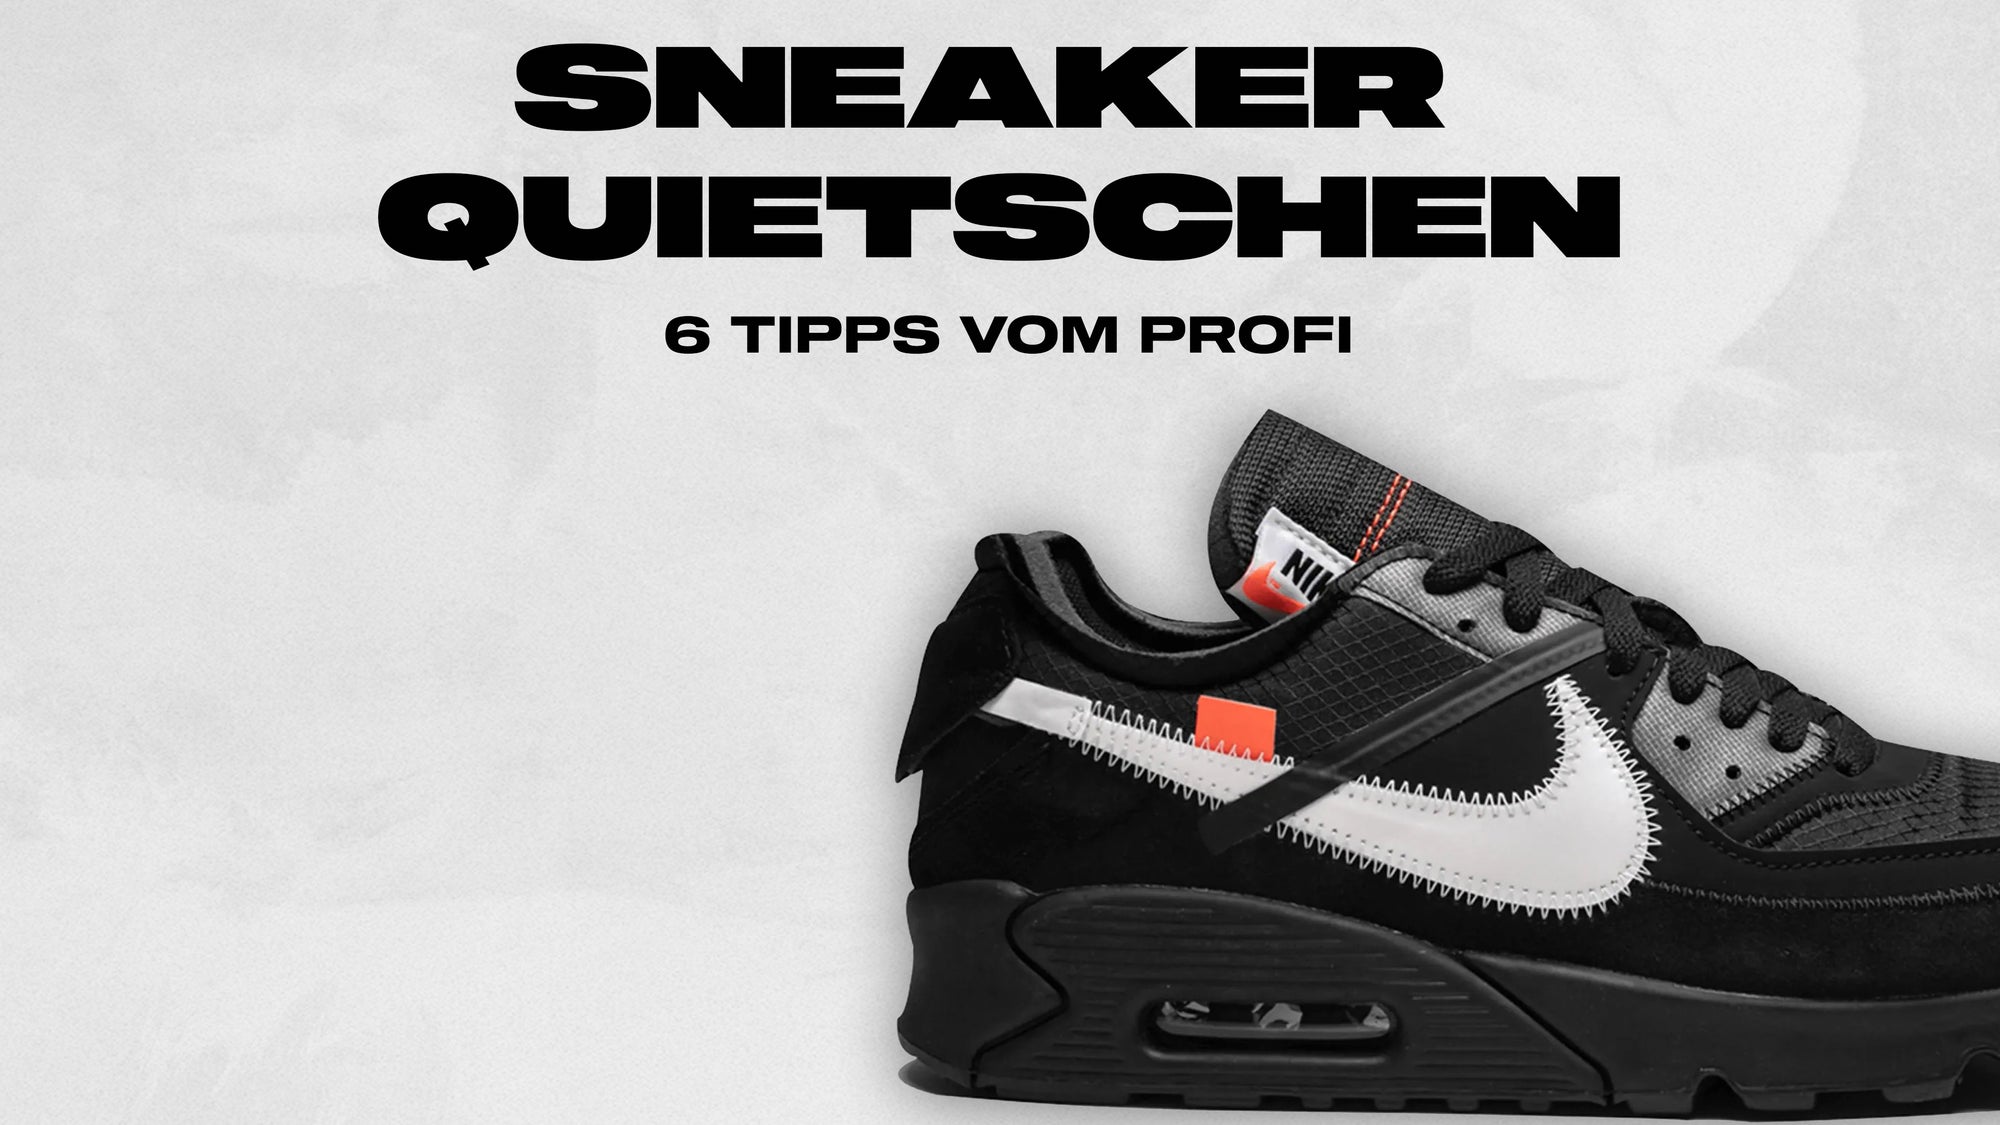 Sneaker quietschen: 6 Tipps vom Profi